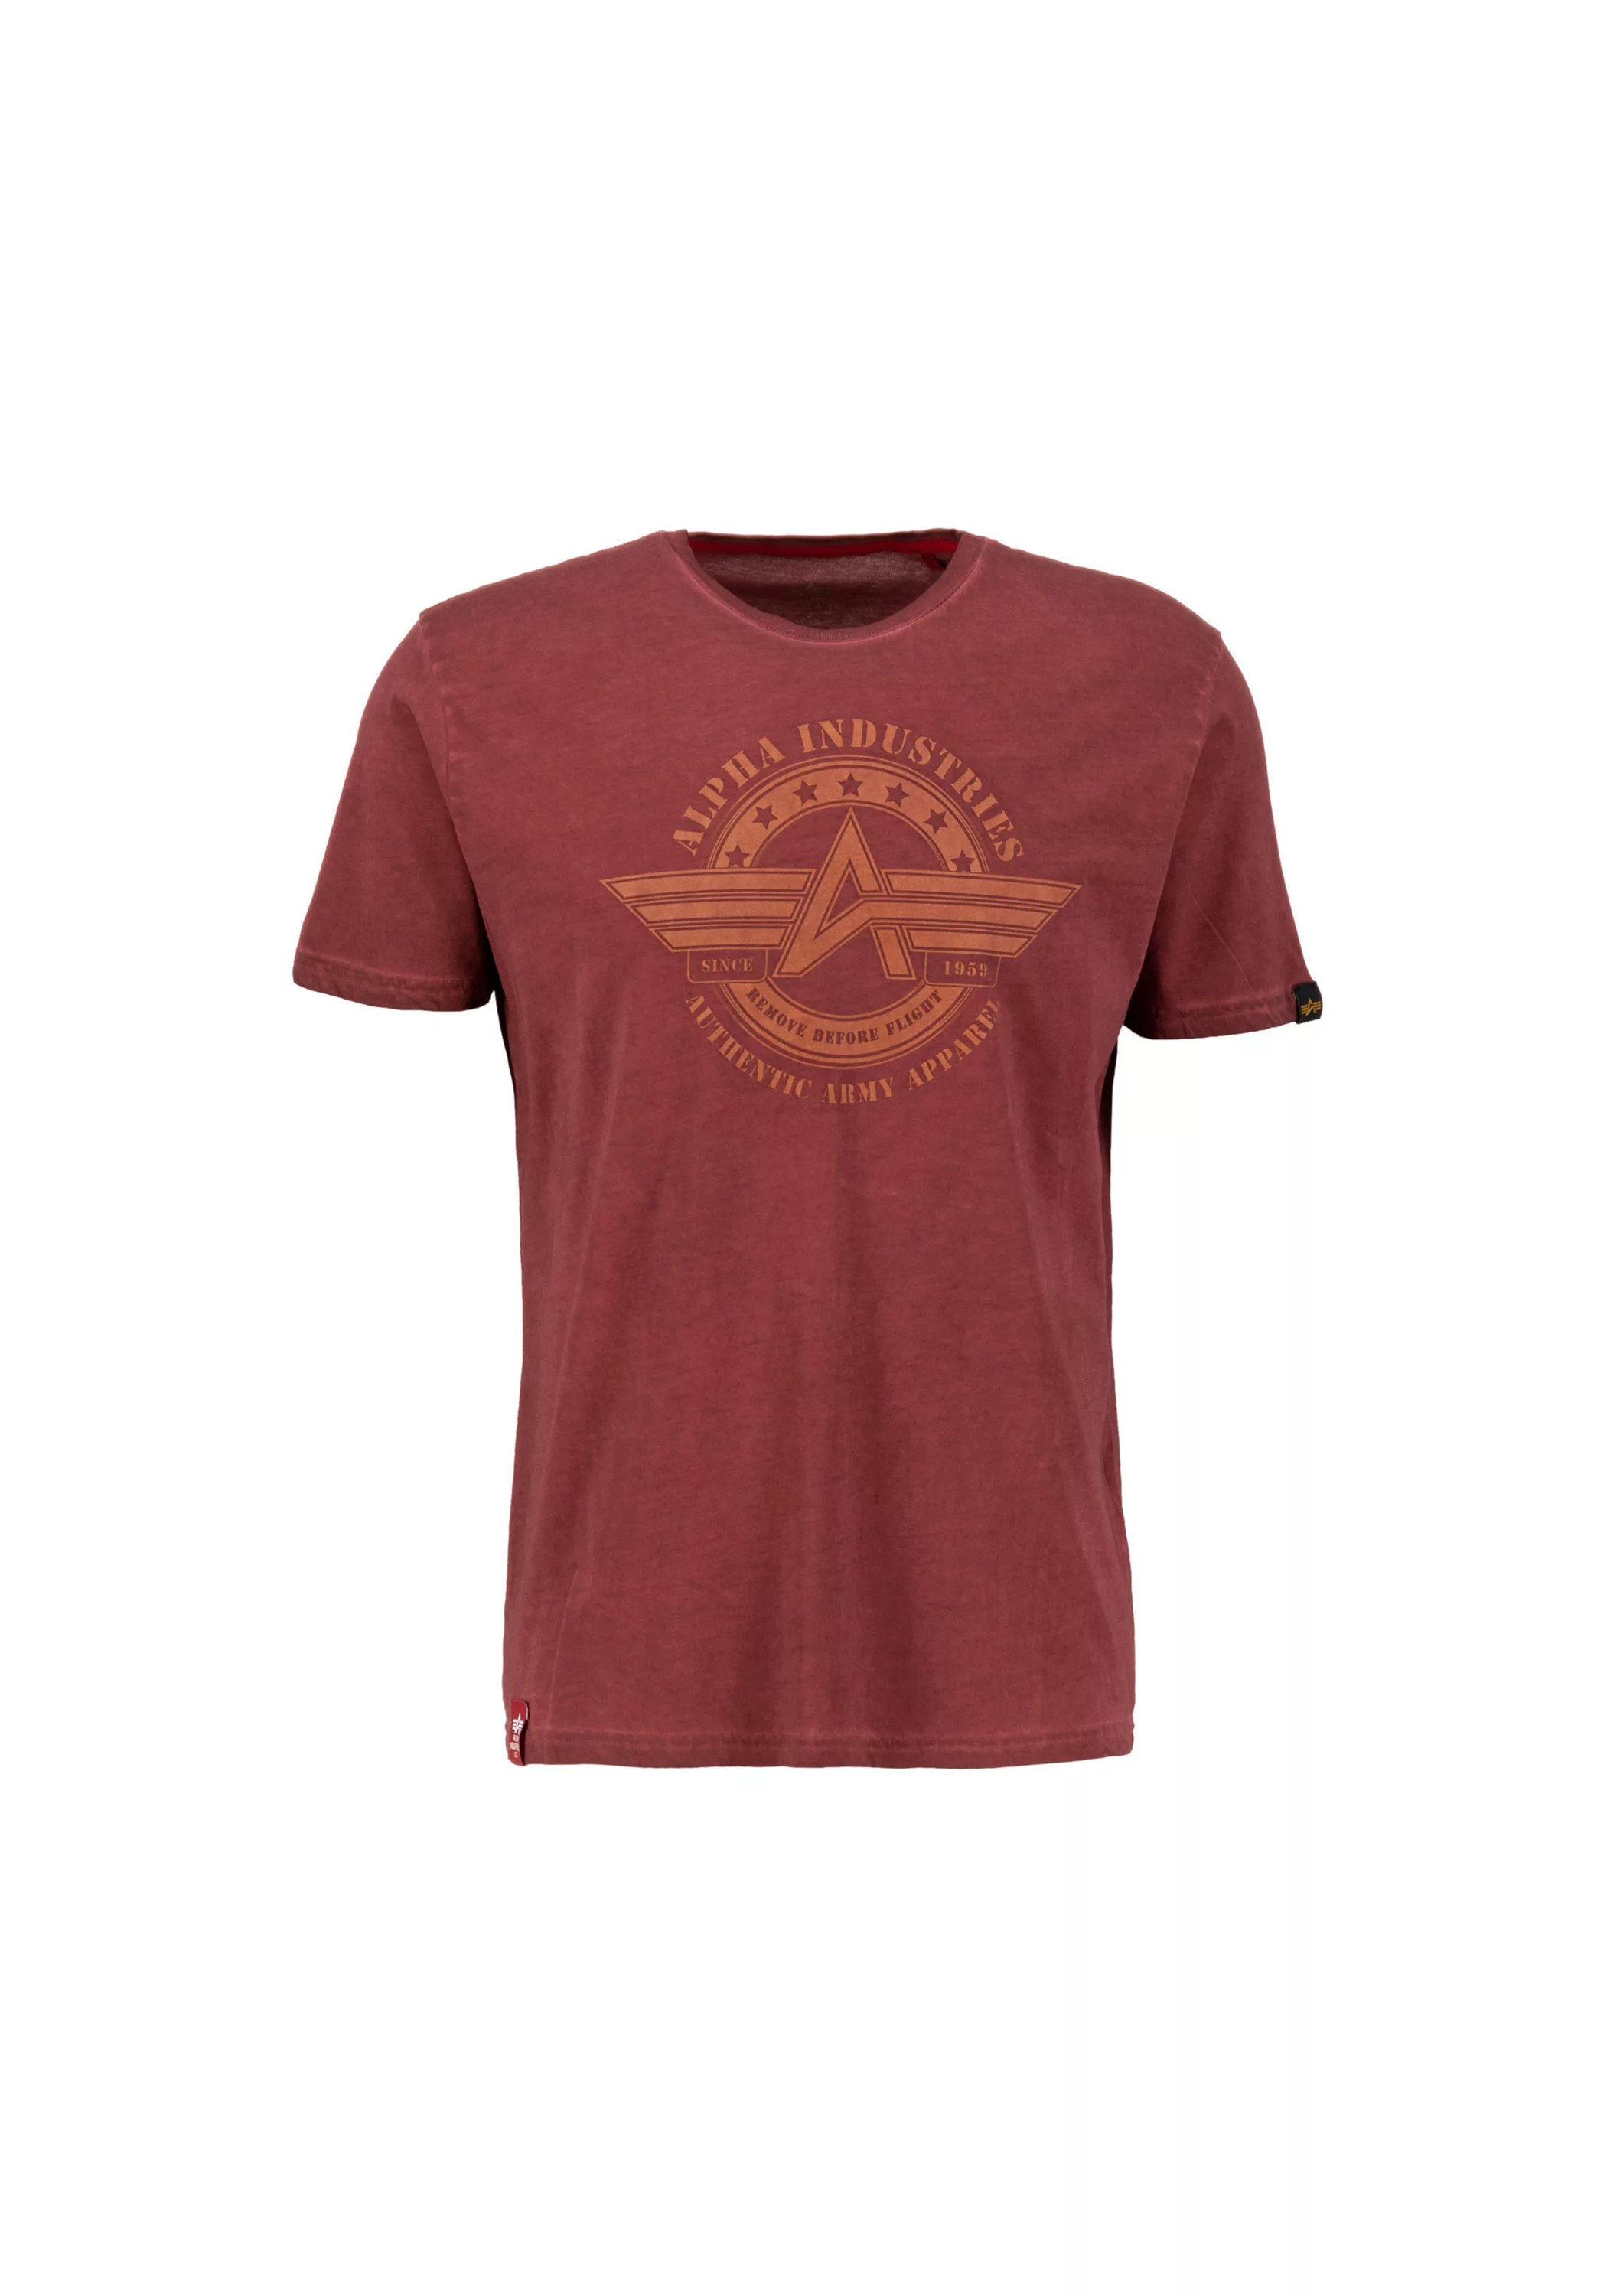 Alpha Industries T-Shirt "ALPHA INDUSTRIES Men - T-Shirts 3D Camo Logo T" günstig online kaufen